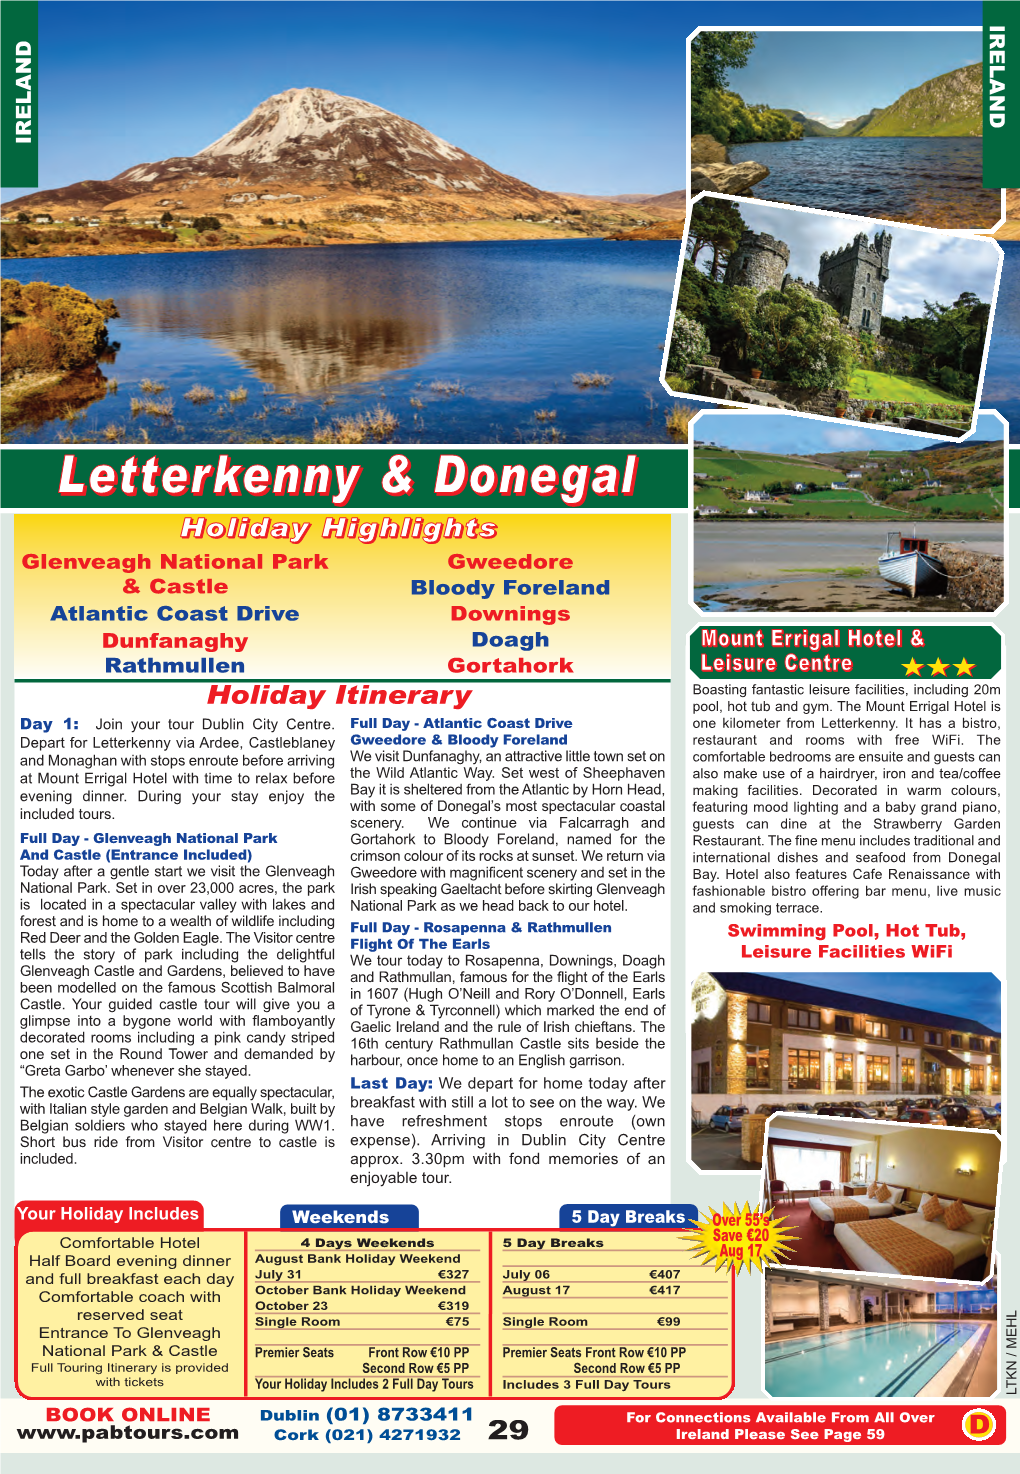 Letterkenny & Donegal